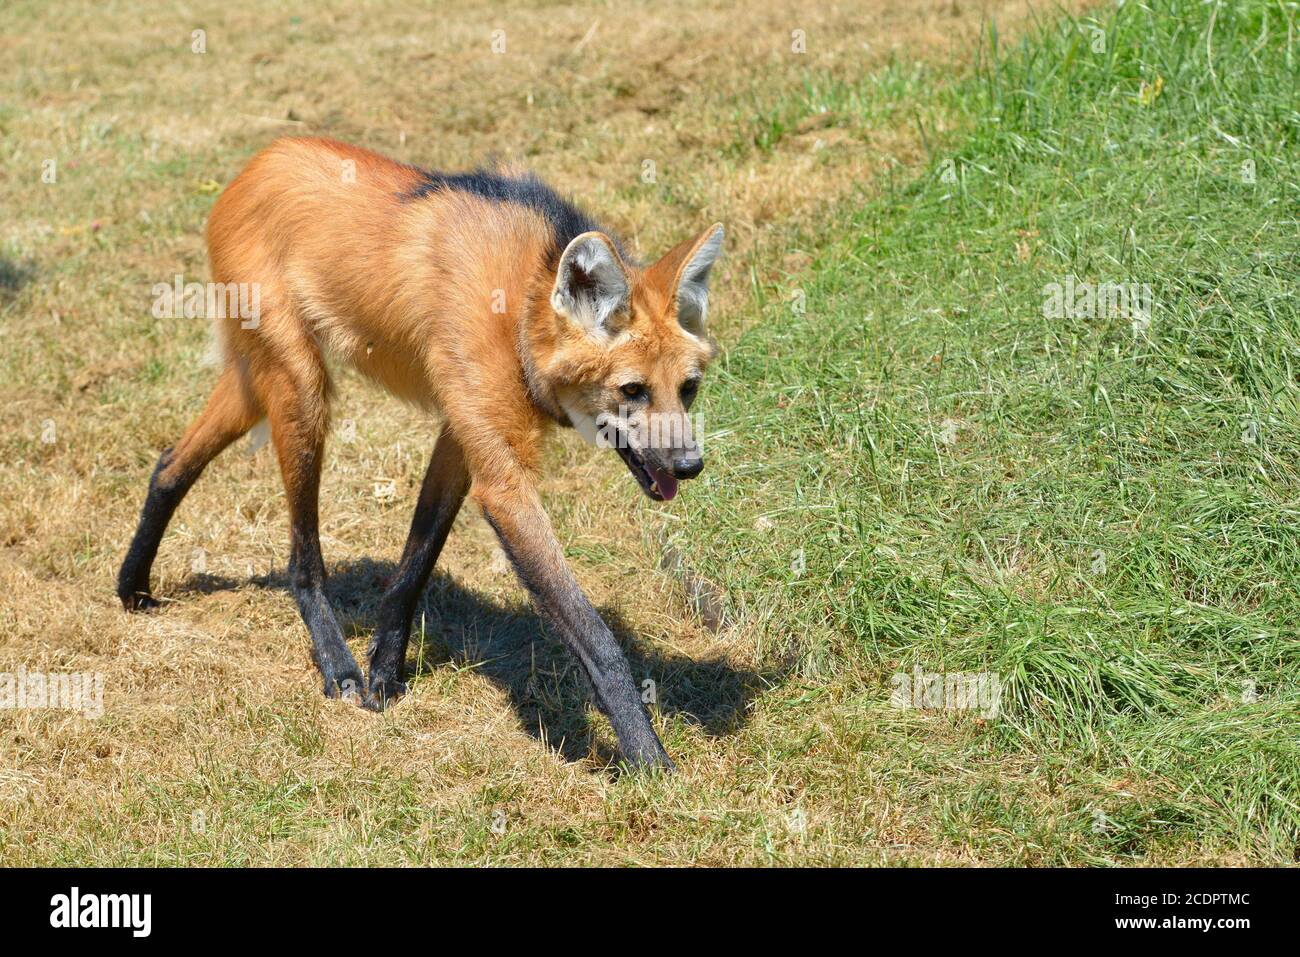 Mähnenwolf (Chrysocyon Brachyurus) mit den charakteristischen Zügen zu Fuß auf dem Rasen und des Profils, das offene Maul gesehen Stockfoto